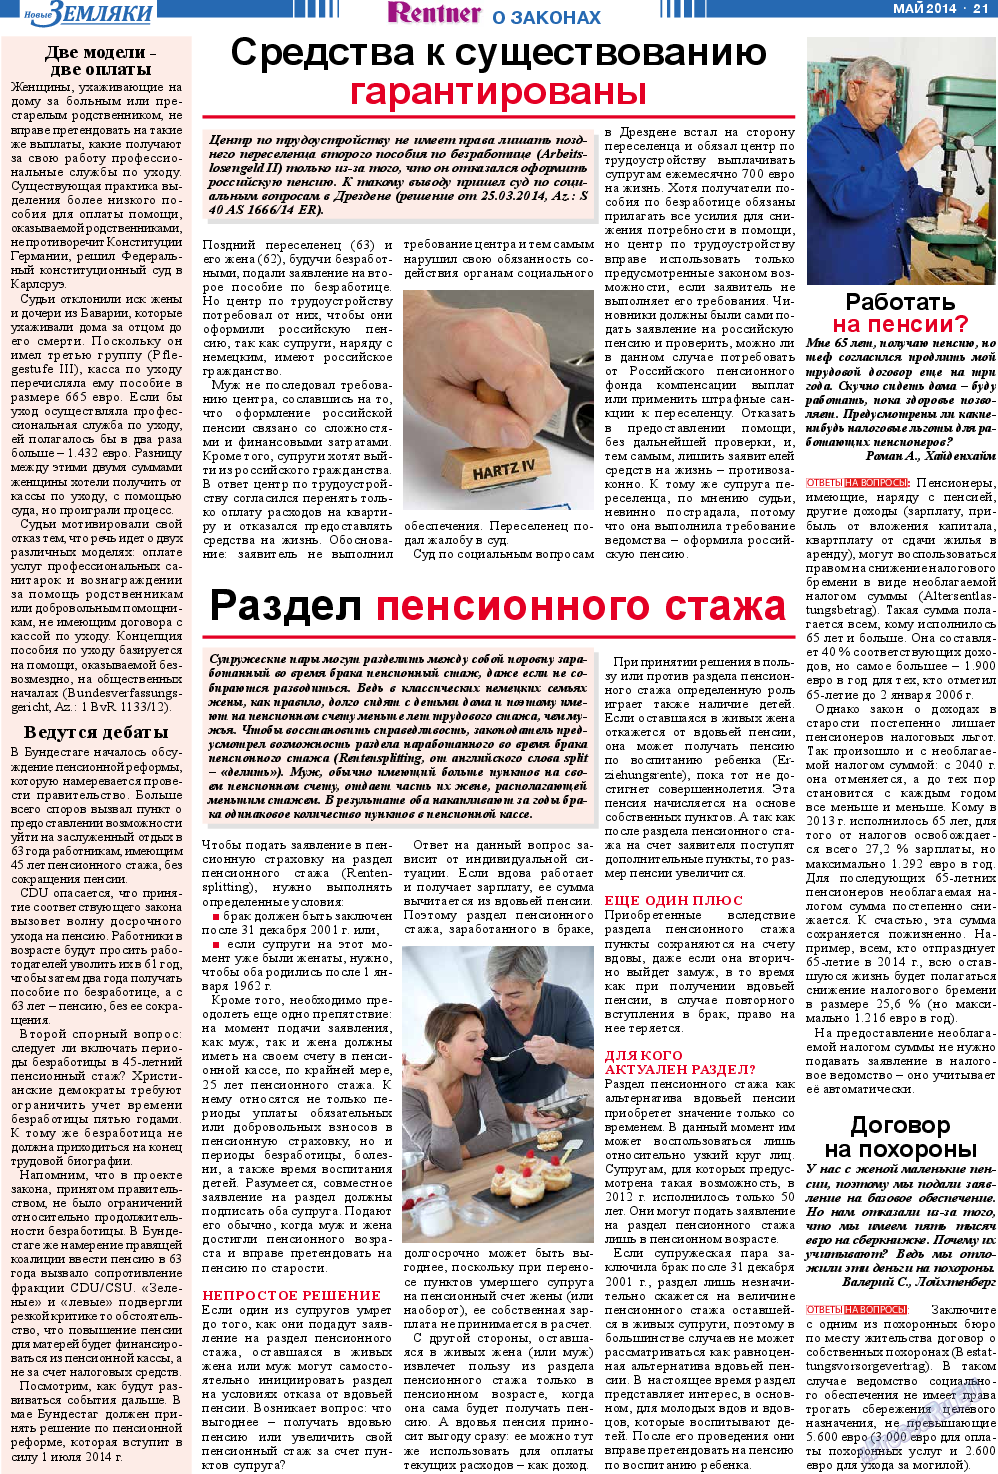 Новые Земляки, газета. 2014 №5 стр.21